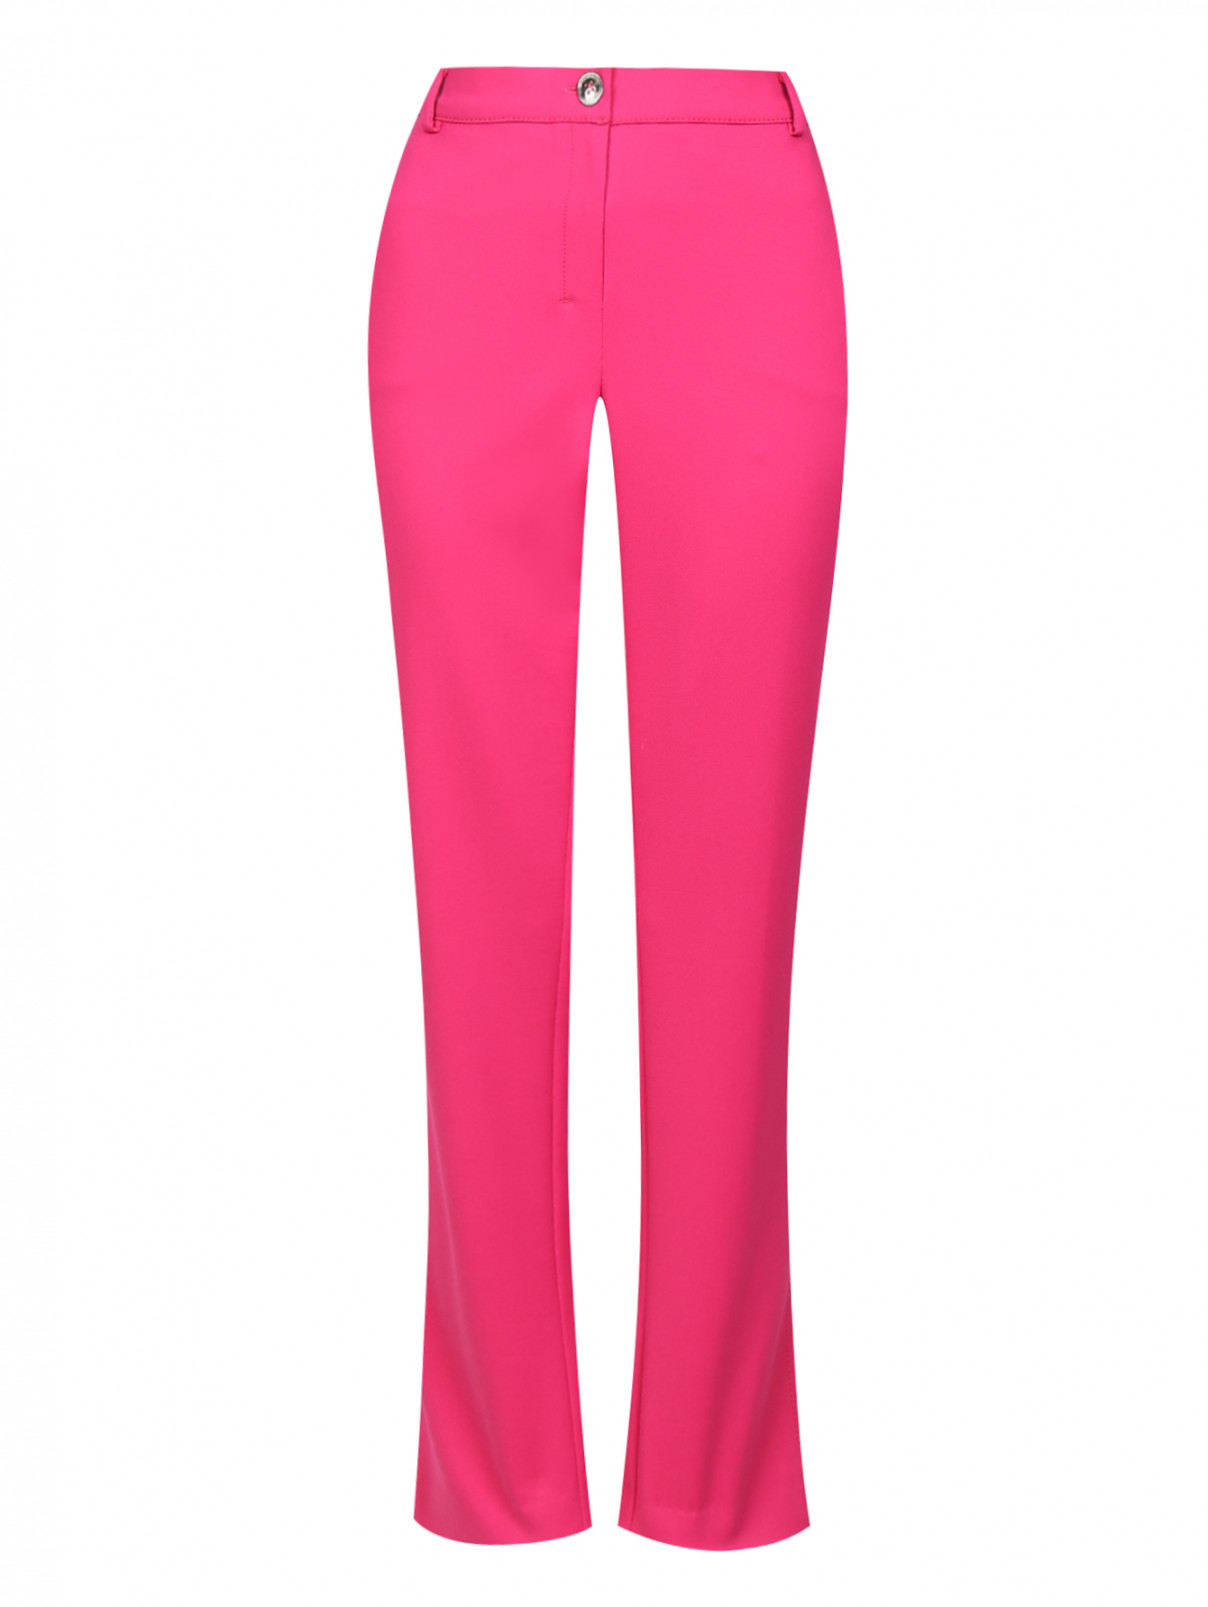 Зауженные брюки с боковыми карманами Voyage by Marina Rinaldi  –  Общий вид  – Цвет:  Розовый